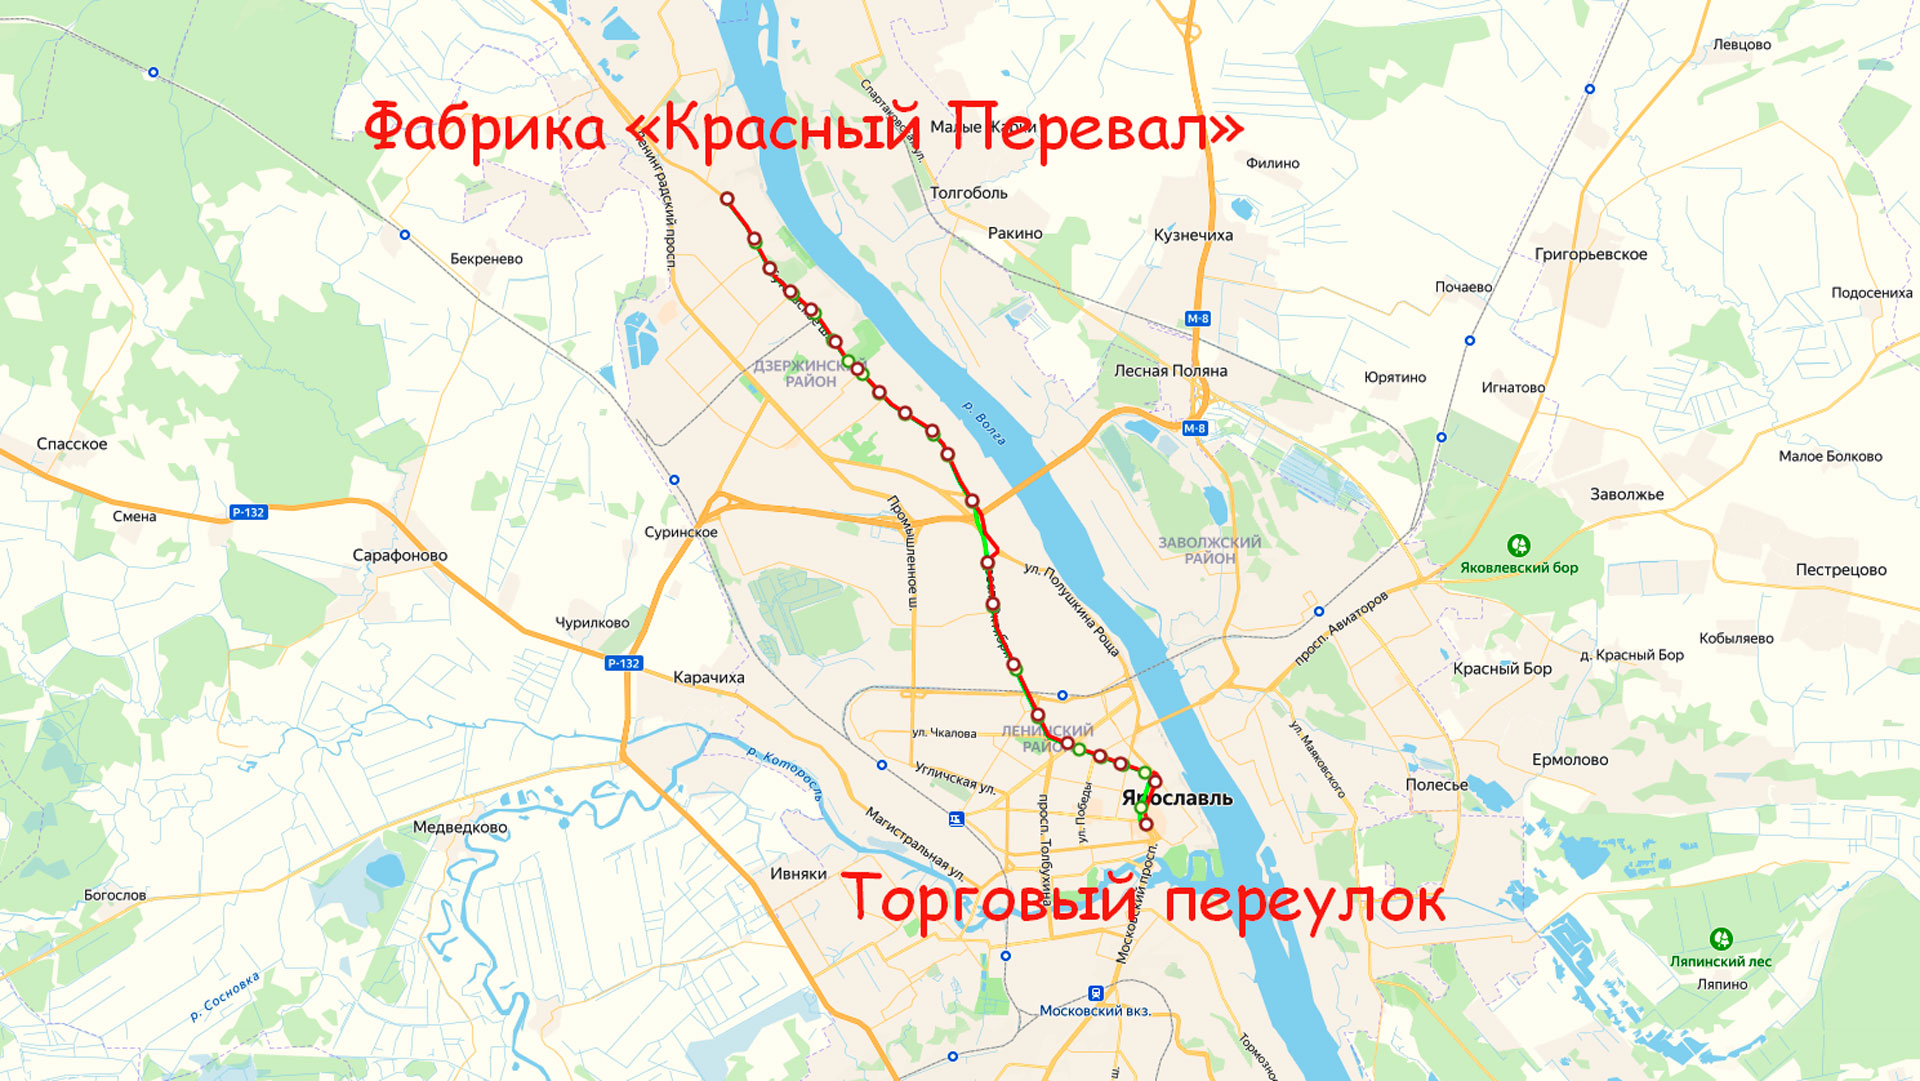 Маршрут троллейбуса 4 в Ярославле на карте.